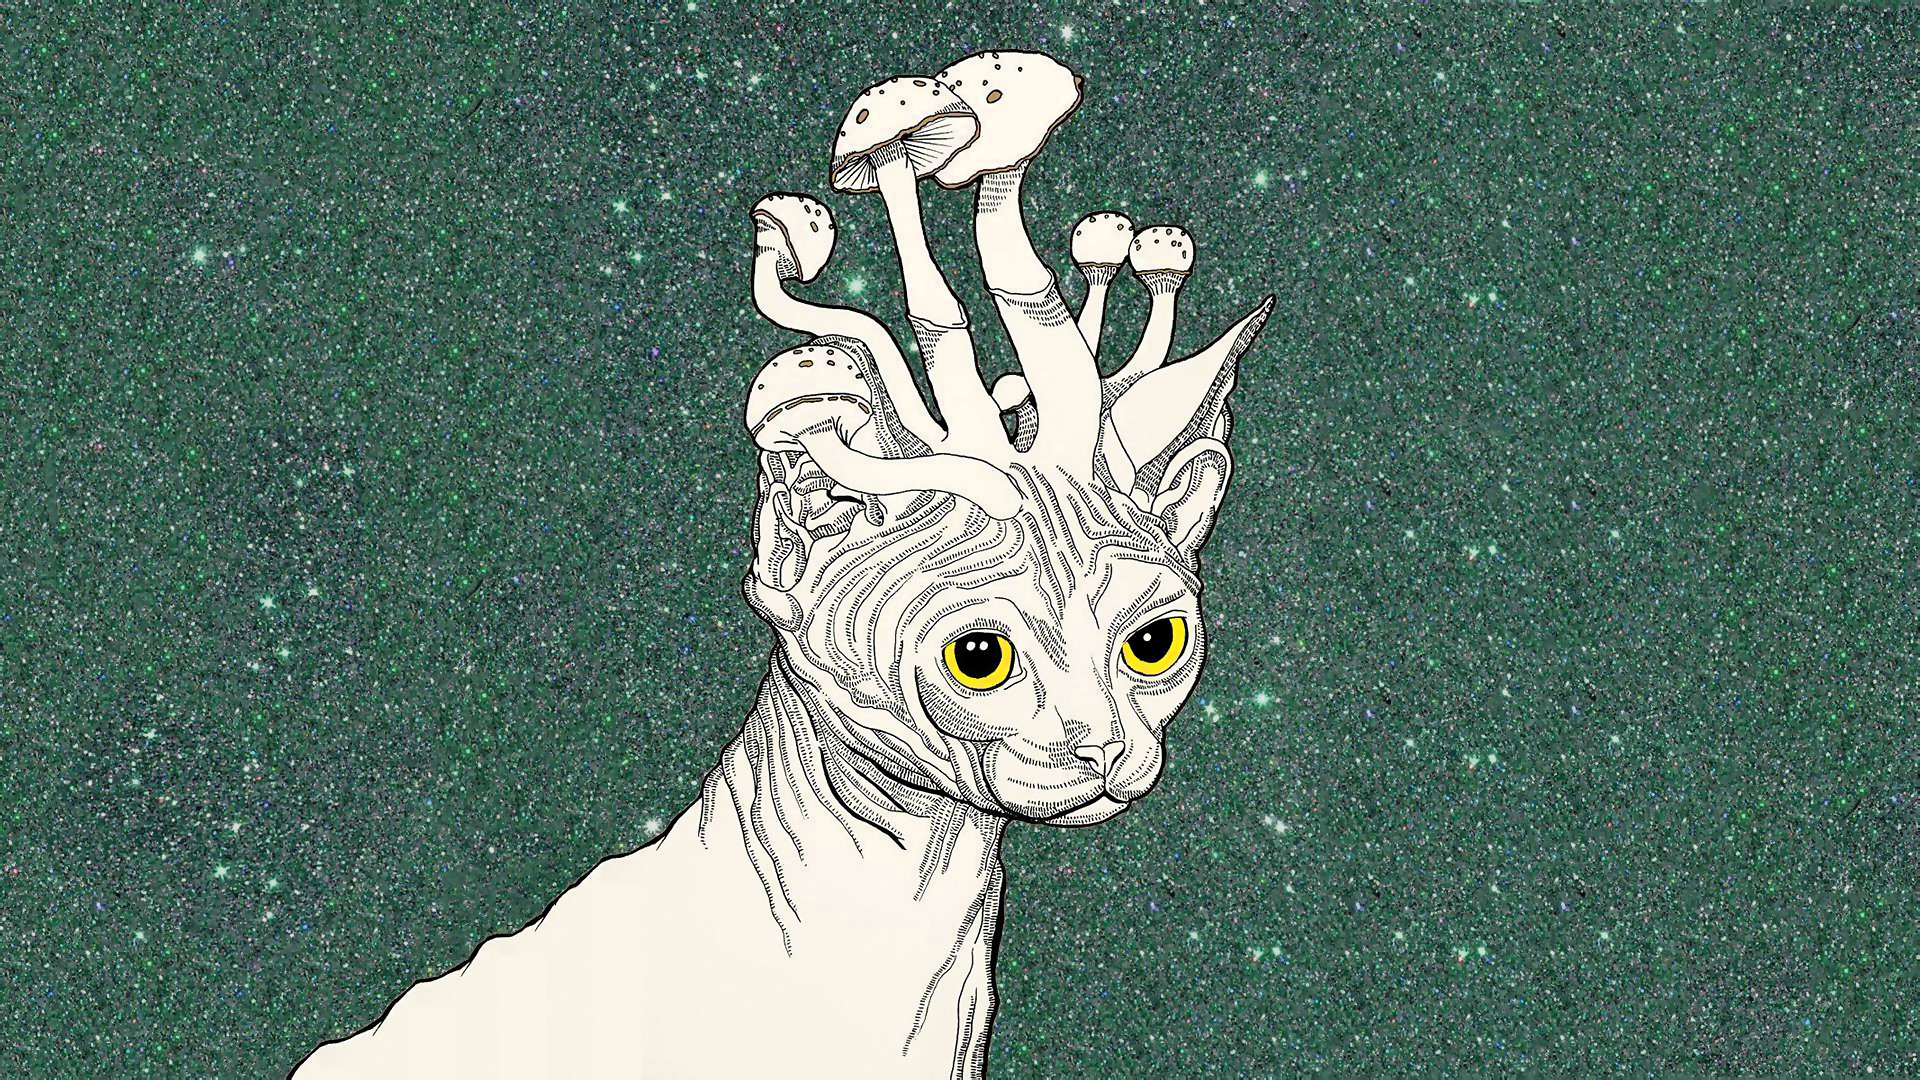 stoner wallpaper,cabeza,ilustración,dibujo,personaje de ficción,gato